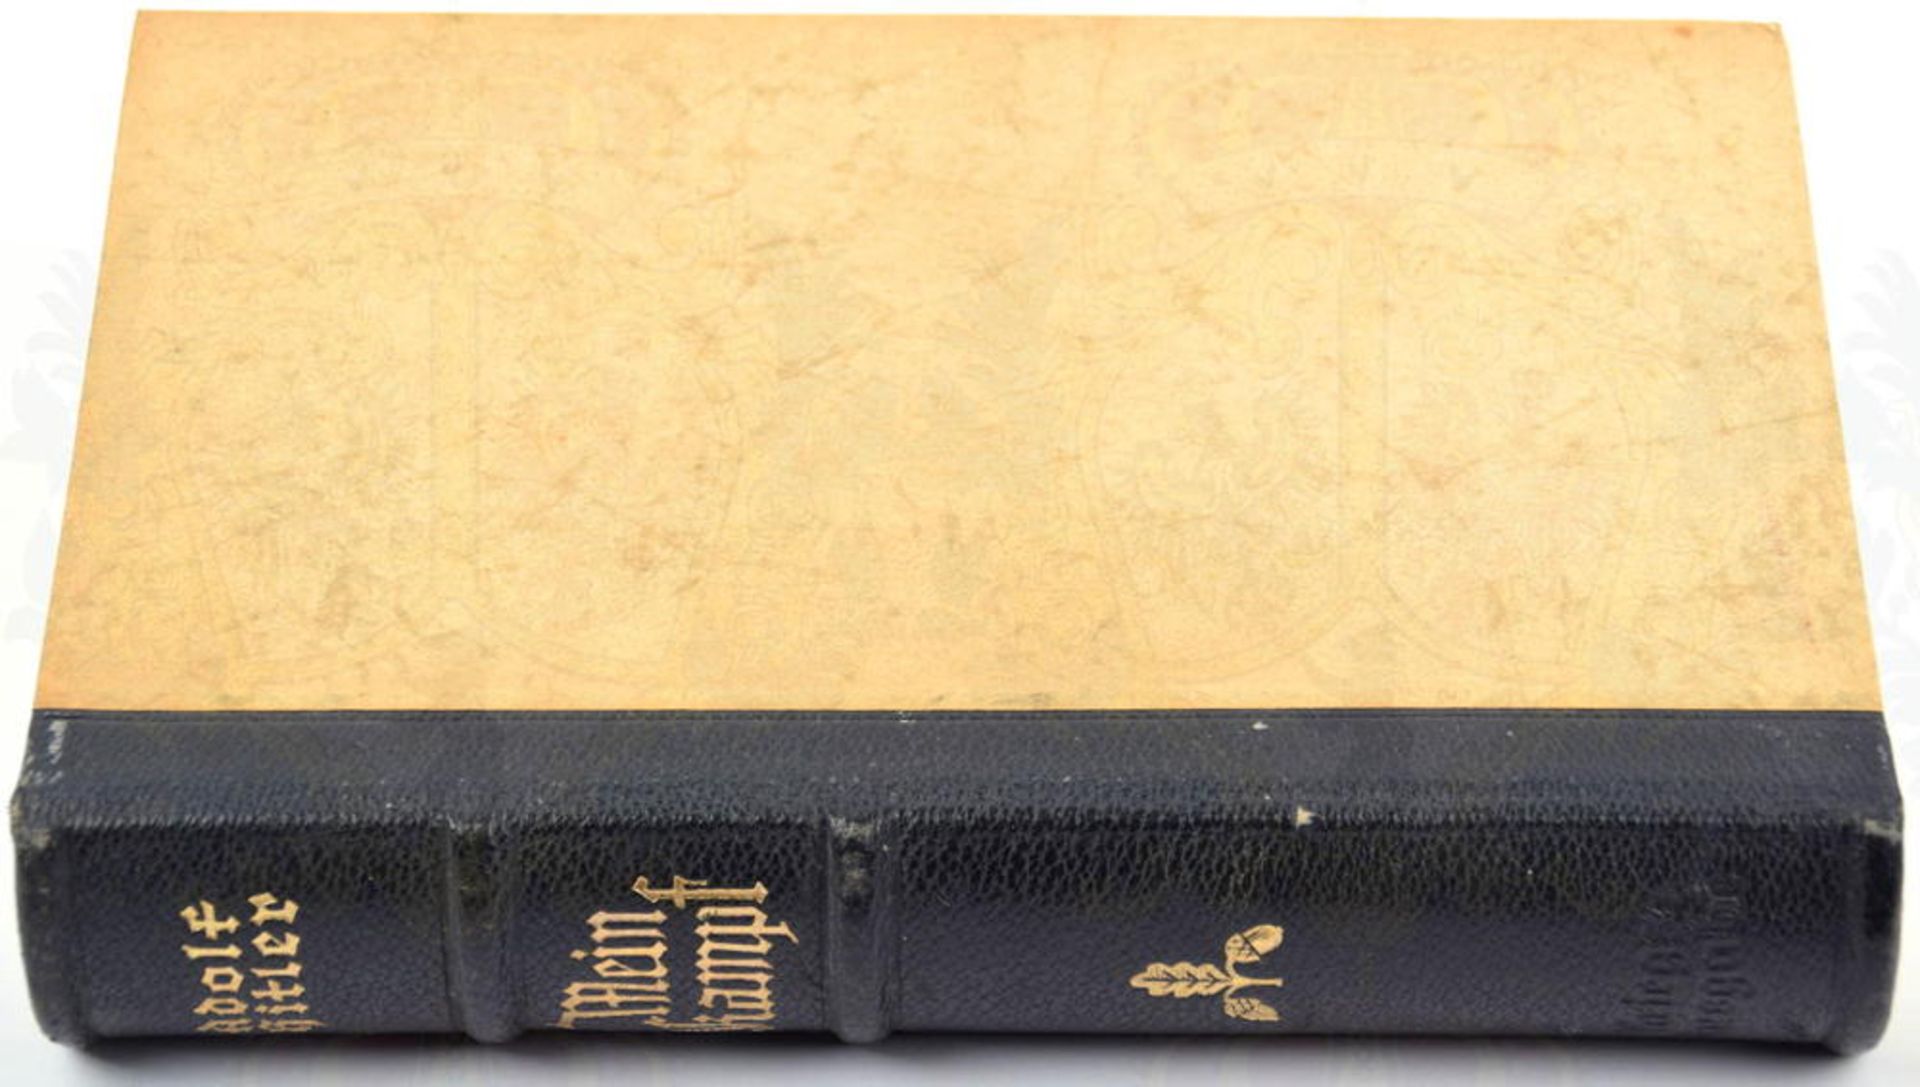 MEIN KAMPF, A. Hitler, Hochzeitsausgabe, Eher-V. 1941, 1 Portr., 781 S., Halbleder m. Rückenvergoldu